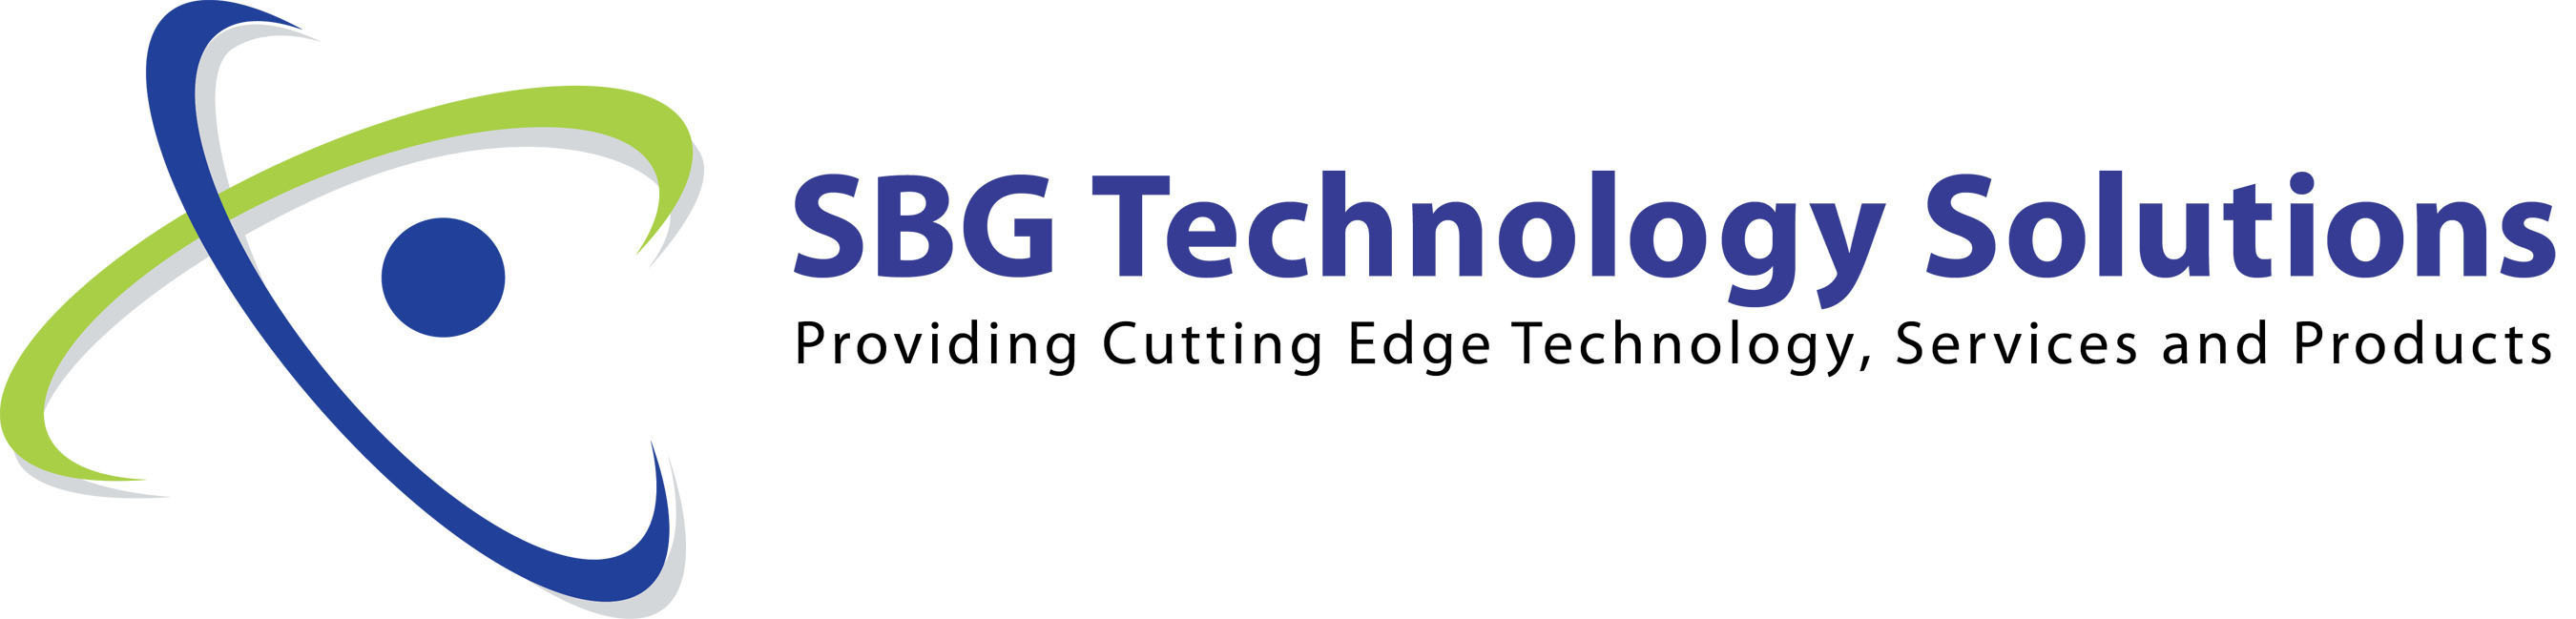 SBG Technology Solutions Logo. (PRNewsFoto/SBG Technology Solutions, Inc.) (PRNewsFoto/)